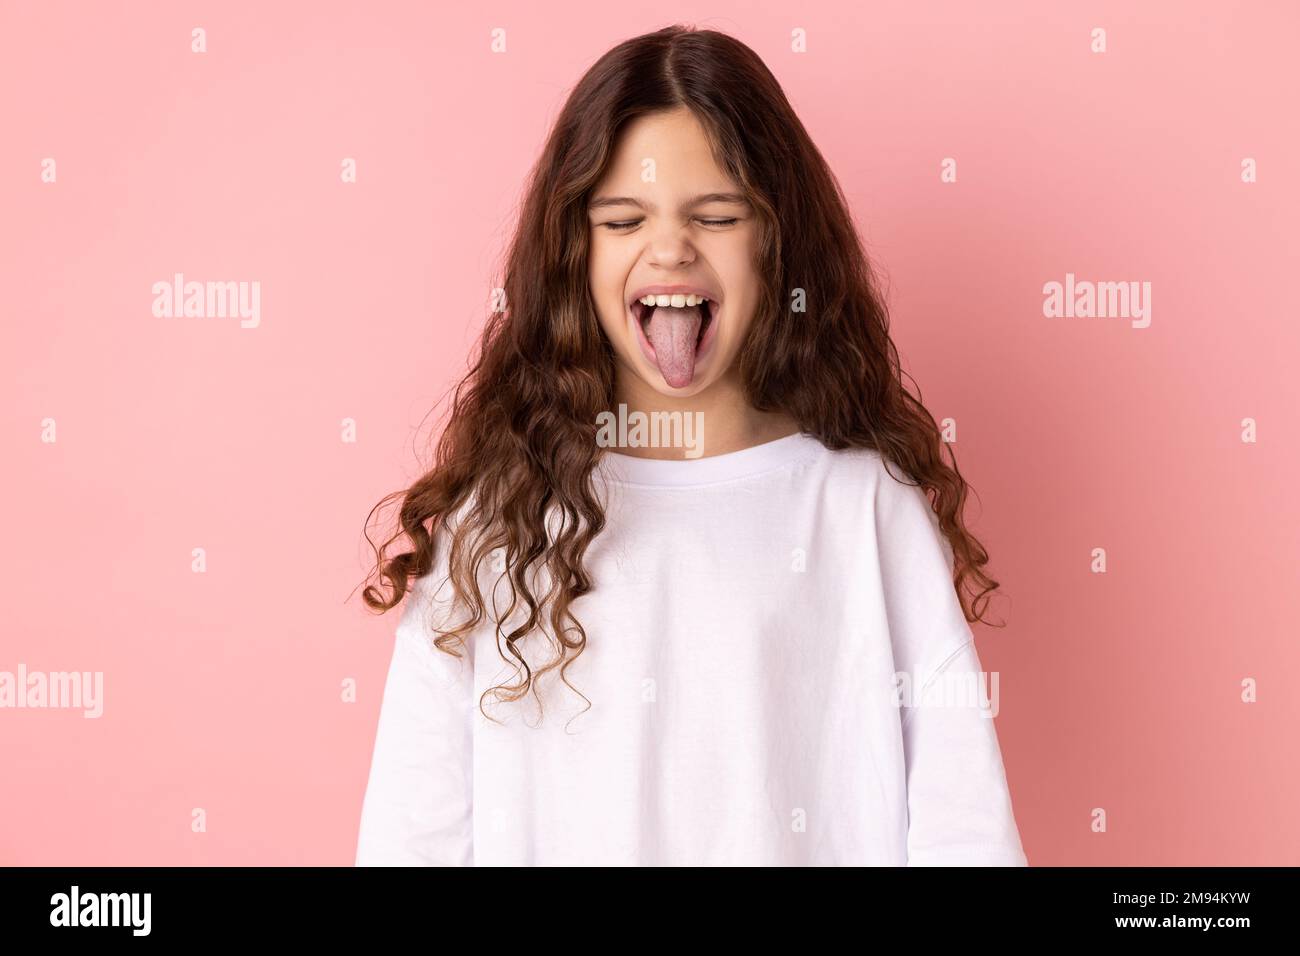 Ritratto di bambina spensierata e infantile che indossa una T-shirt bianca che mostra la lingua e chiude gli occhi con una grimace disubbidiente, facendo il viso. Studio in interni isolato su sfondo rosa. Foto Stock